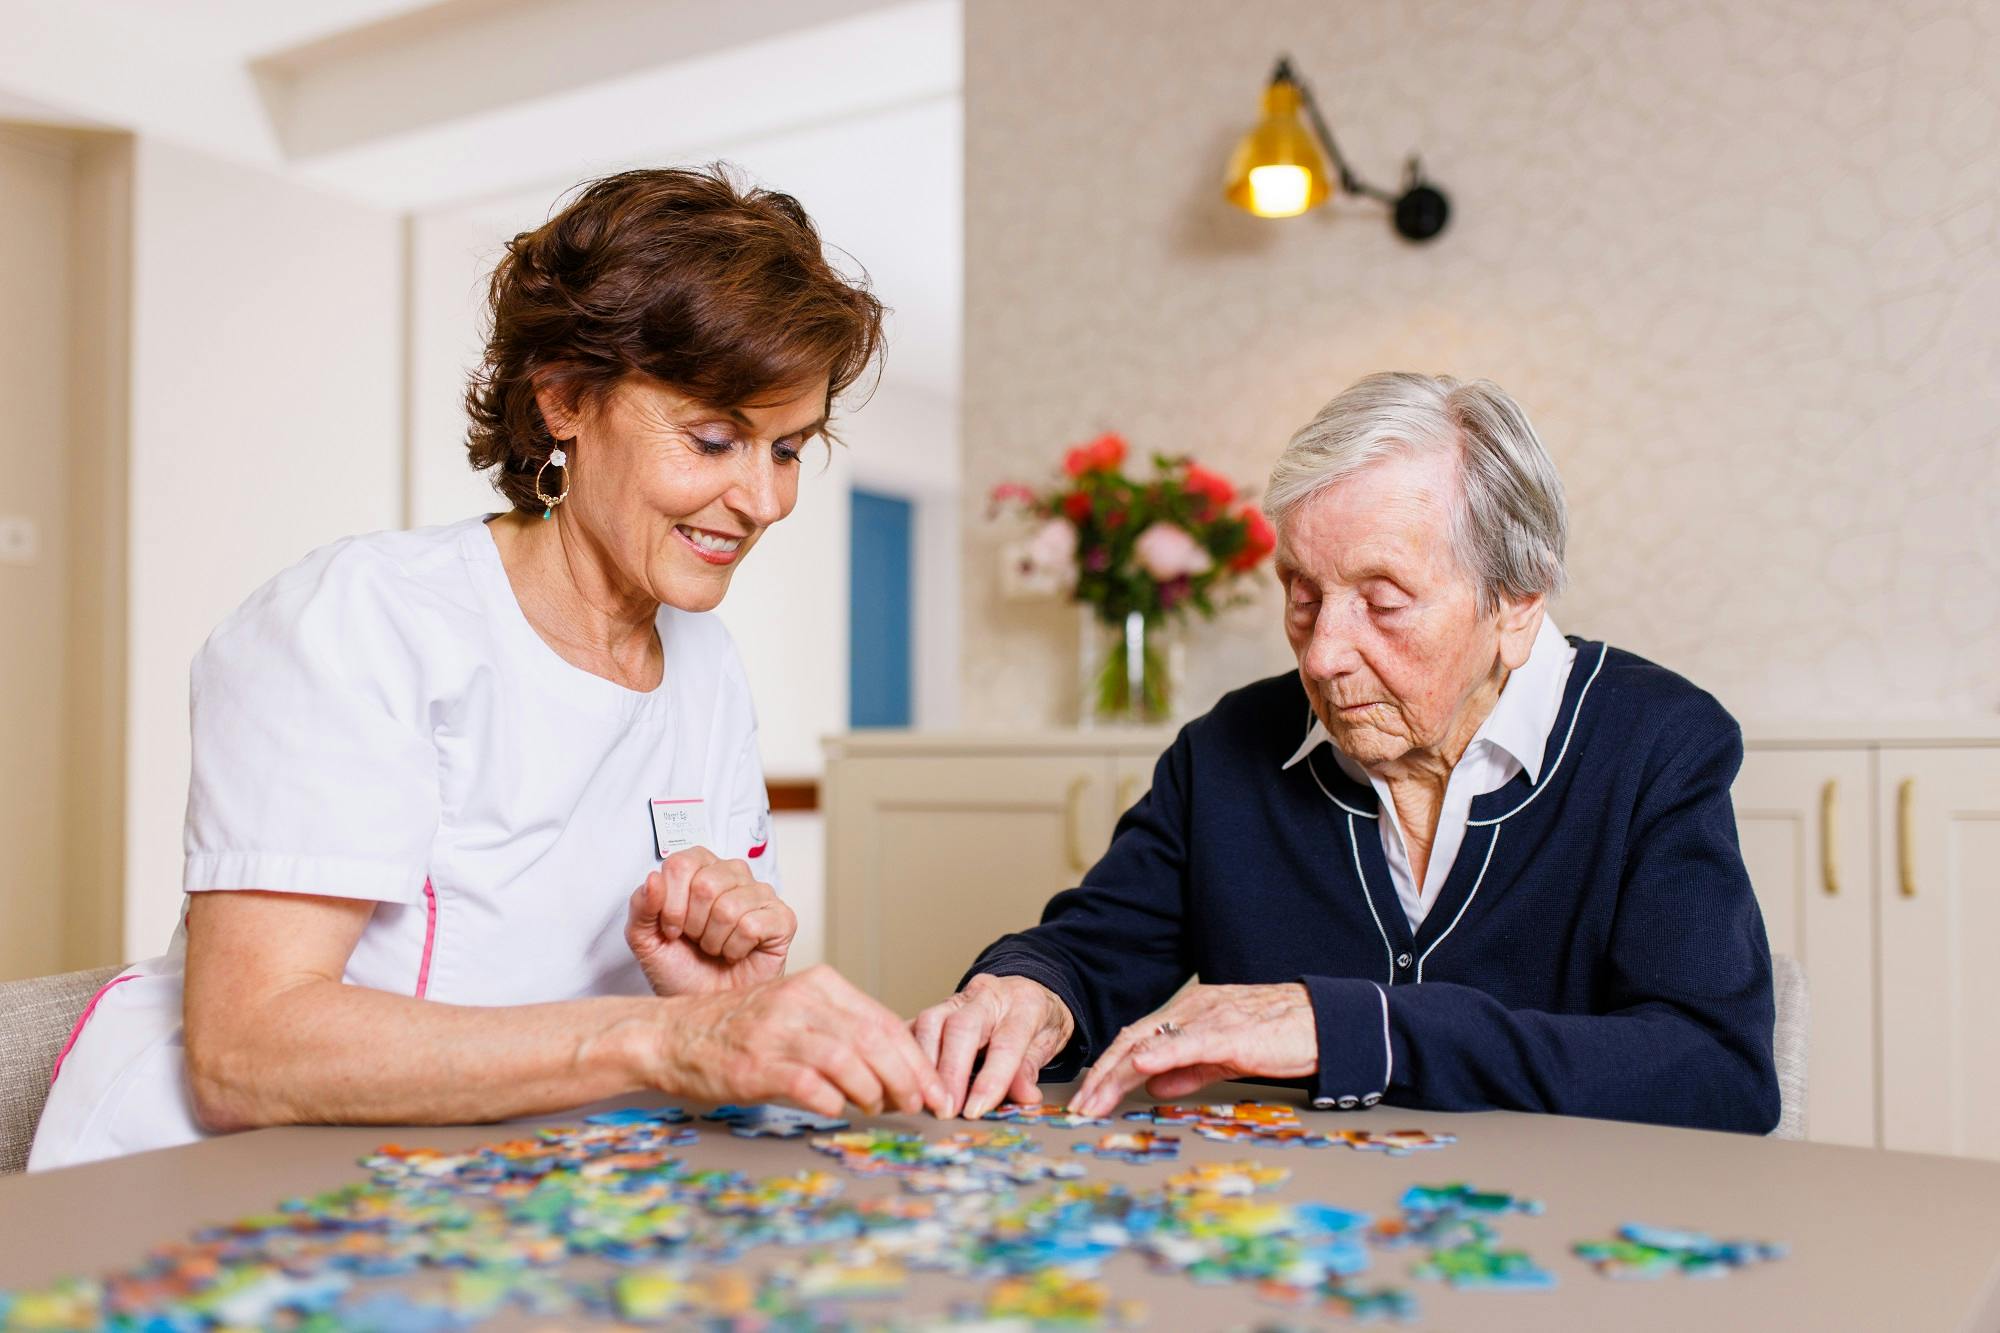 Pflegekraft unterstützt Senior beim Puzzeln im Wohnzimmer.